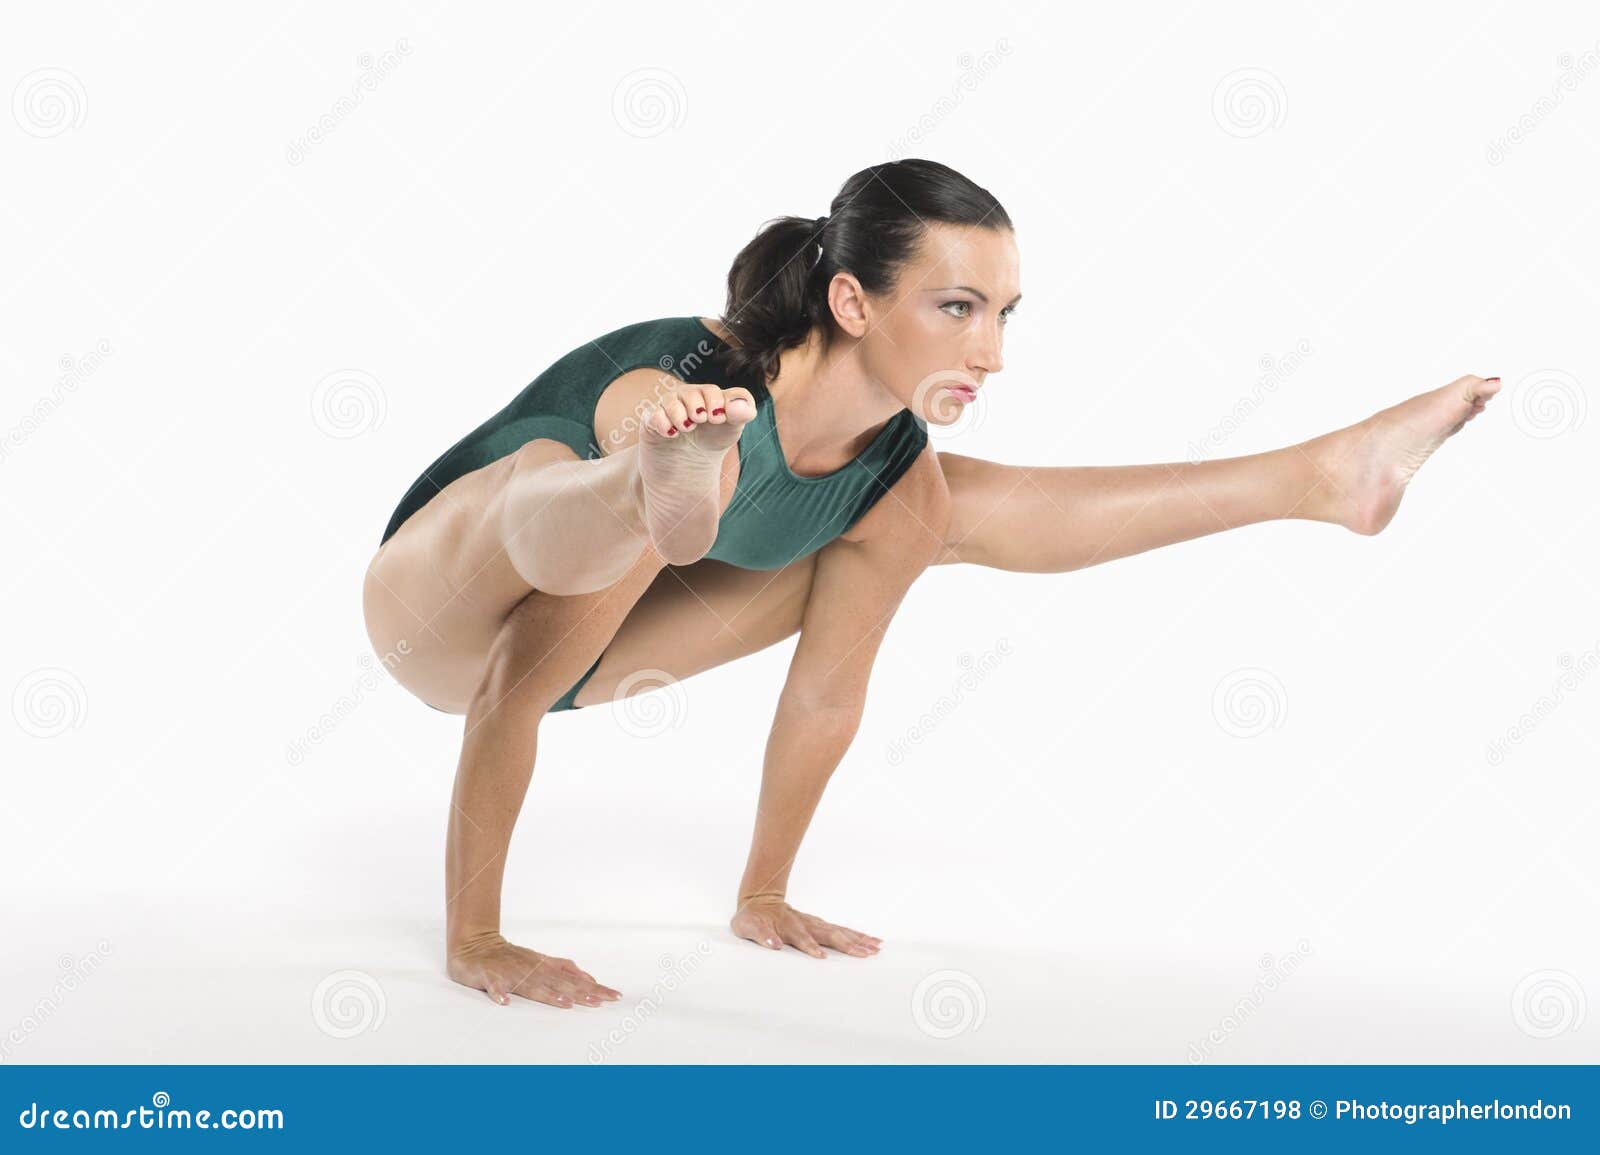 women in handstand fucking